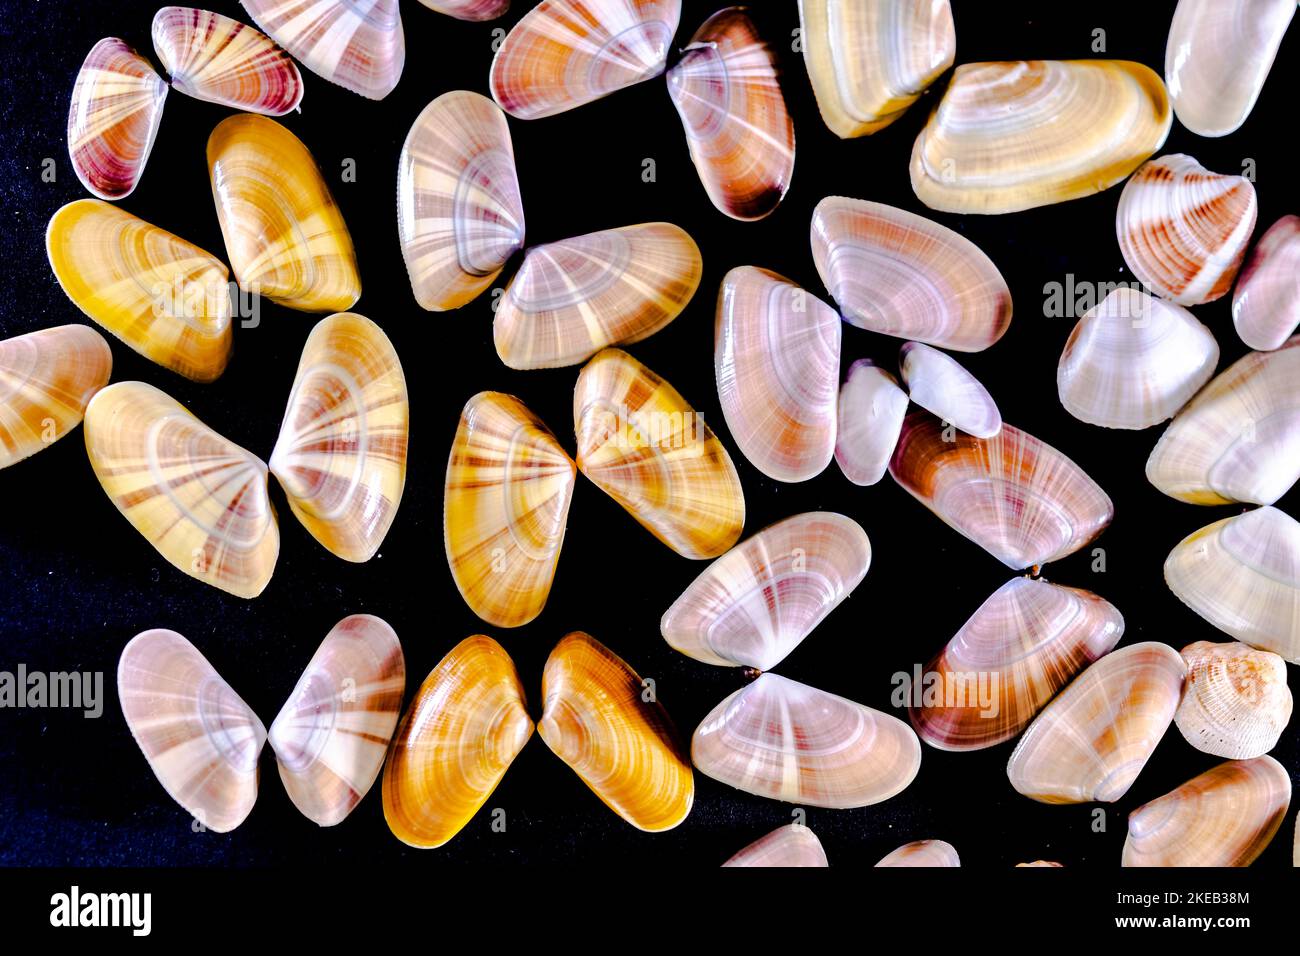 Vue très rapprochée d'une collection de mollusques Donax variabilis ou Coquina à palourdes d'eau salée qui ouvraient des coquilles comme les papillons. Macro-photographie en bac foncé Banque D'Images